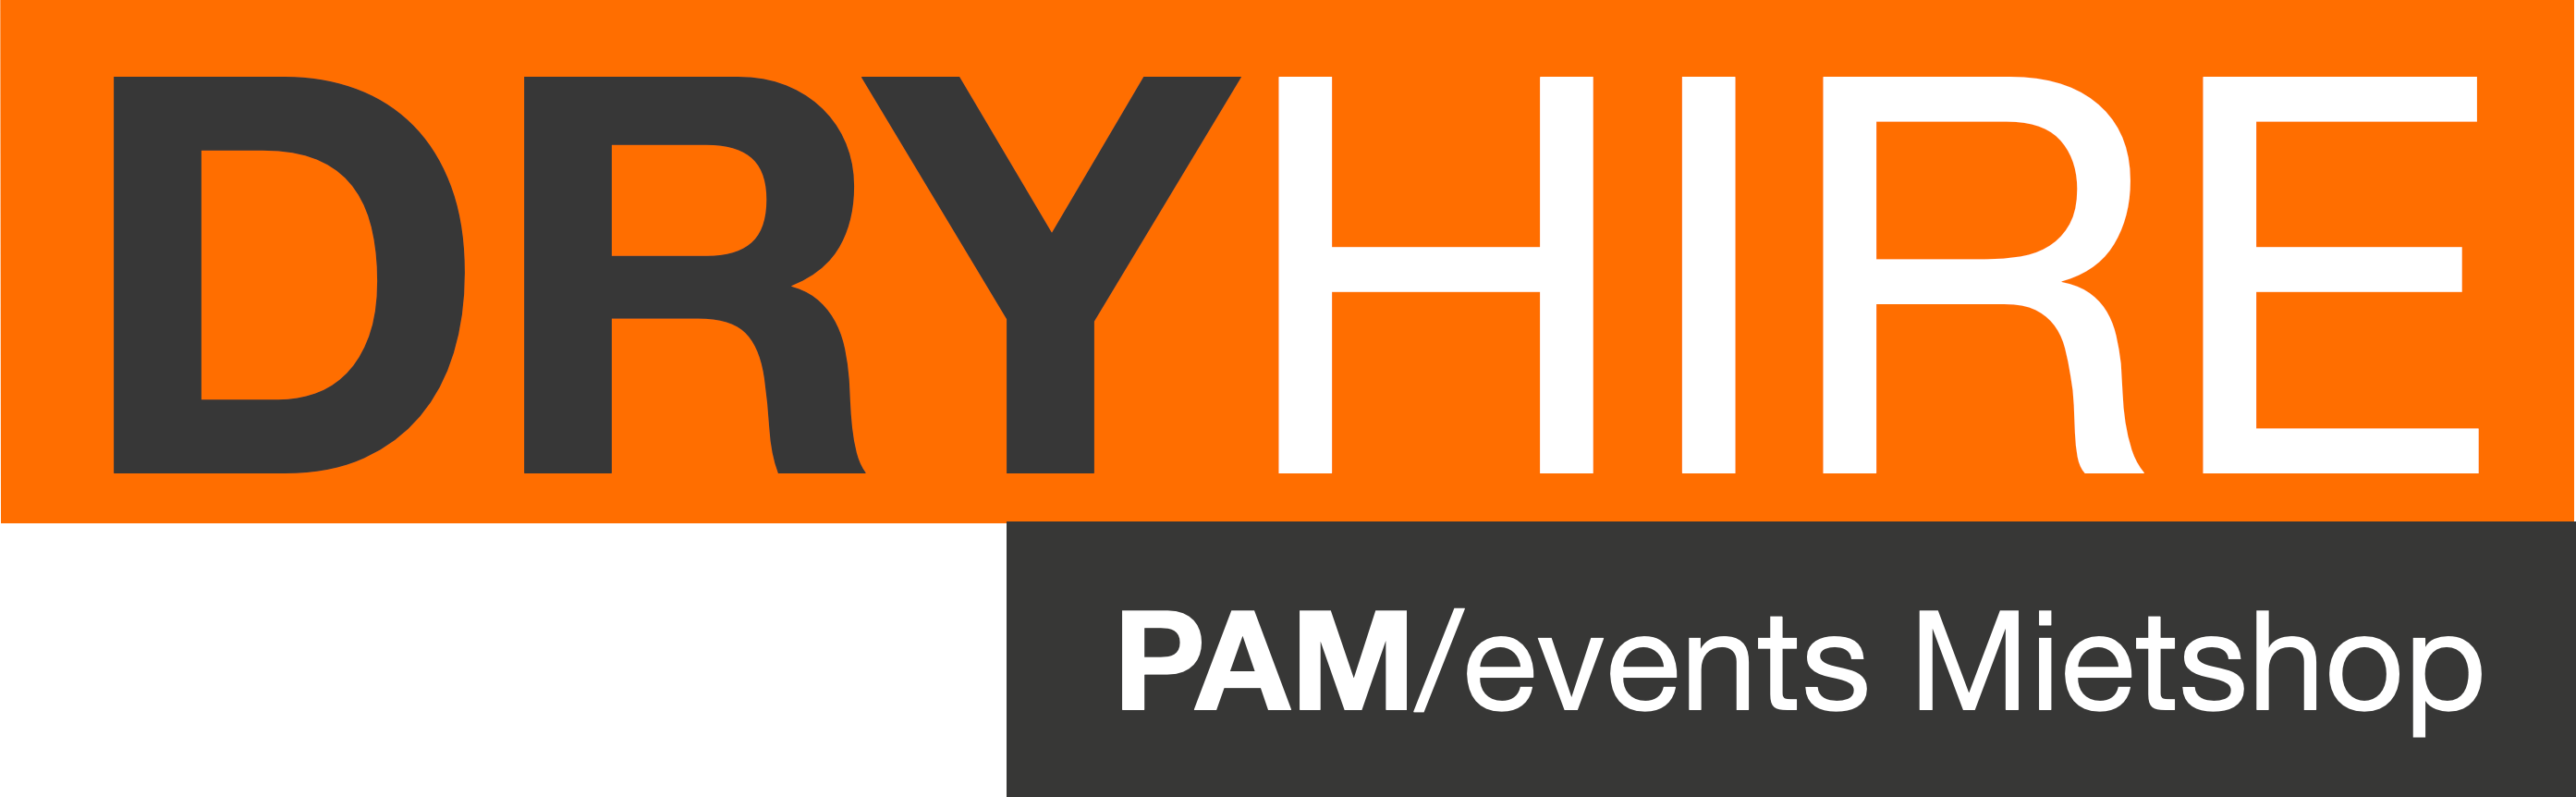 PAMevents - Vermietshop für Veranstaltungstechnik